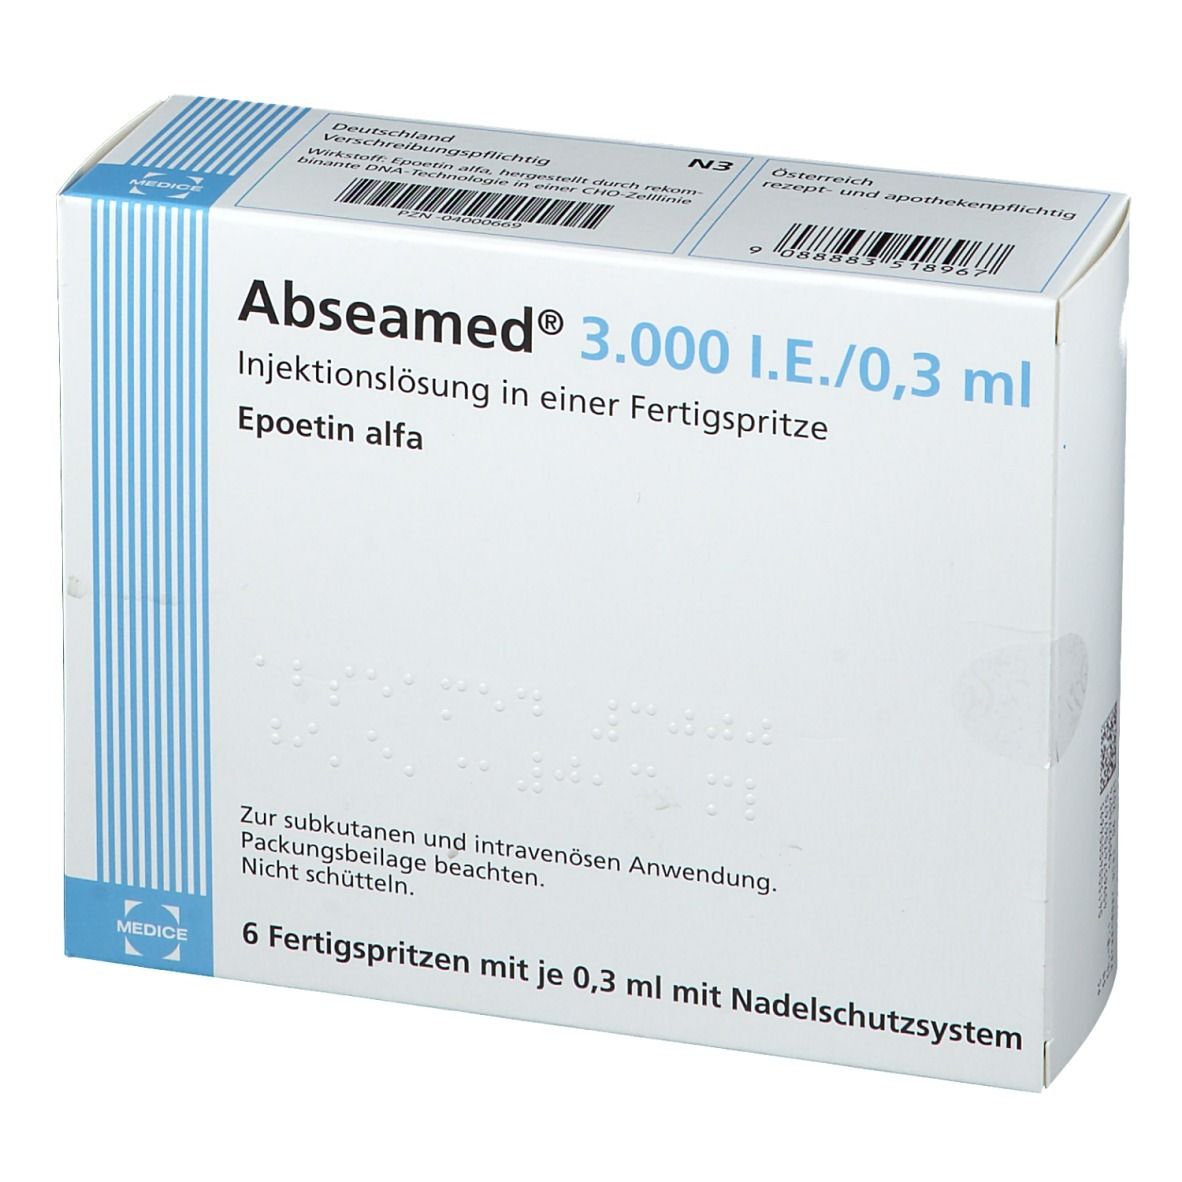 Abseamed® 3.000 I.E./0,3 ml